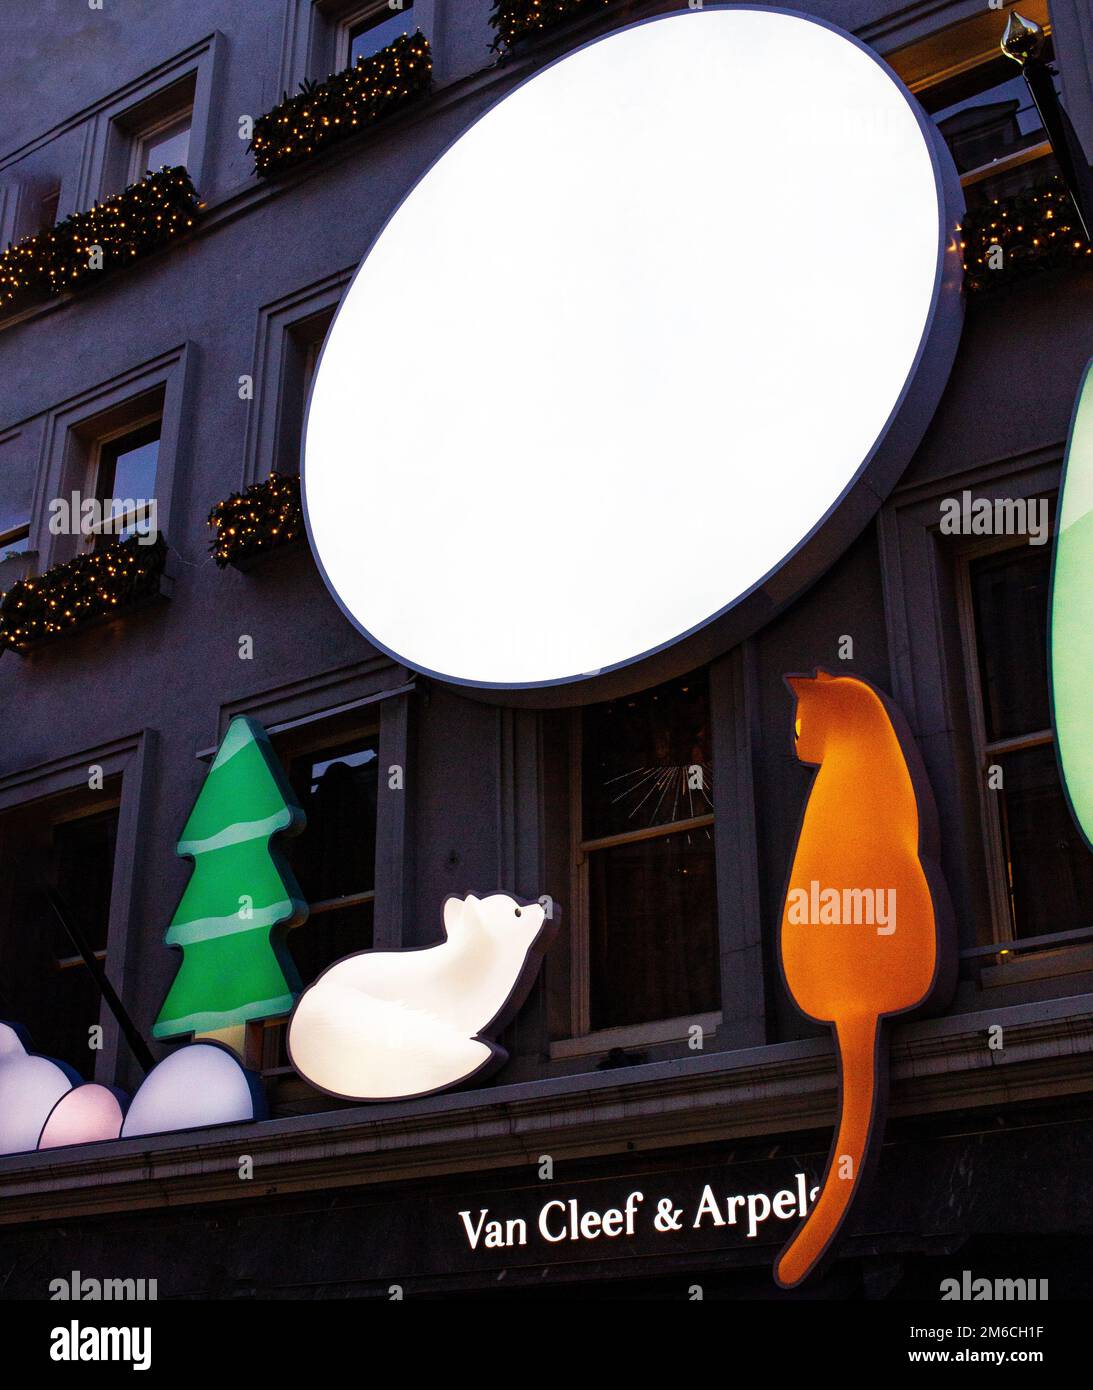 Van Cleef & Arpels Schaufensterfront/Schaufenster/visuelles Merchandising des Bond Street Ladens, und gehobenes, wohlhabendes, gehobenes, luxuriöses Business Stockfoto